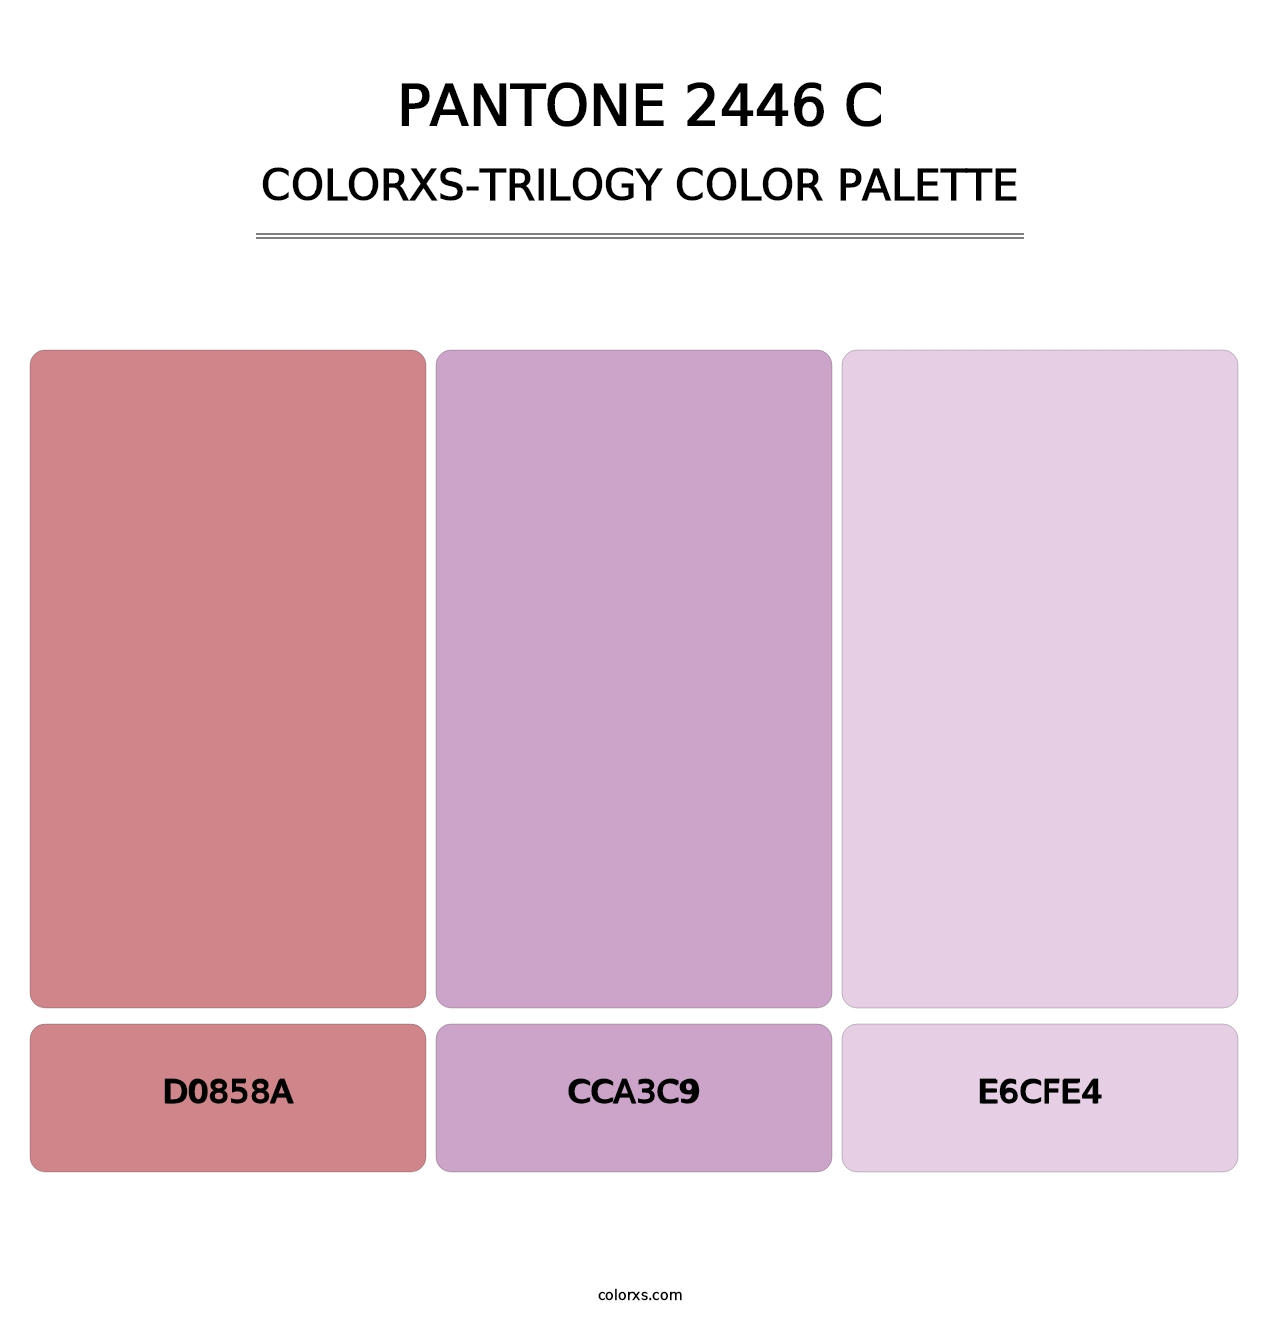 PANTONE 2446 C - Colorxs Trilogy Palette